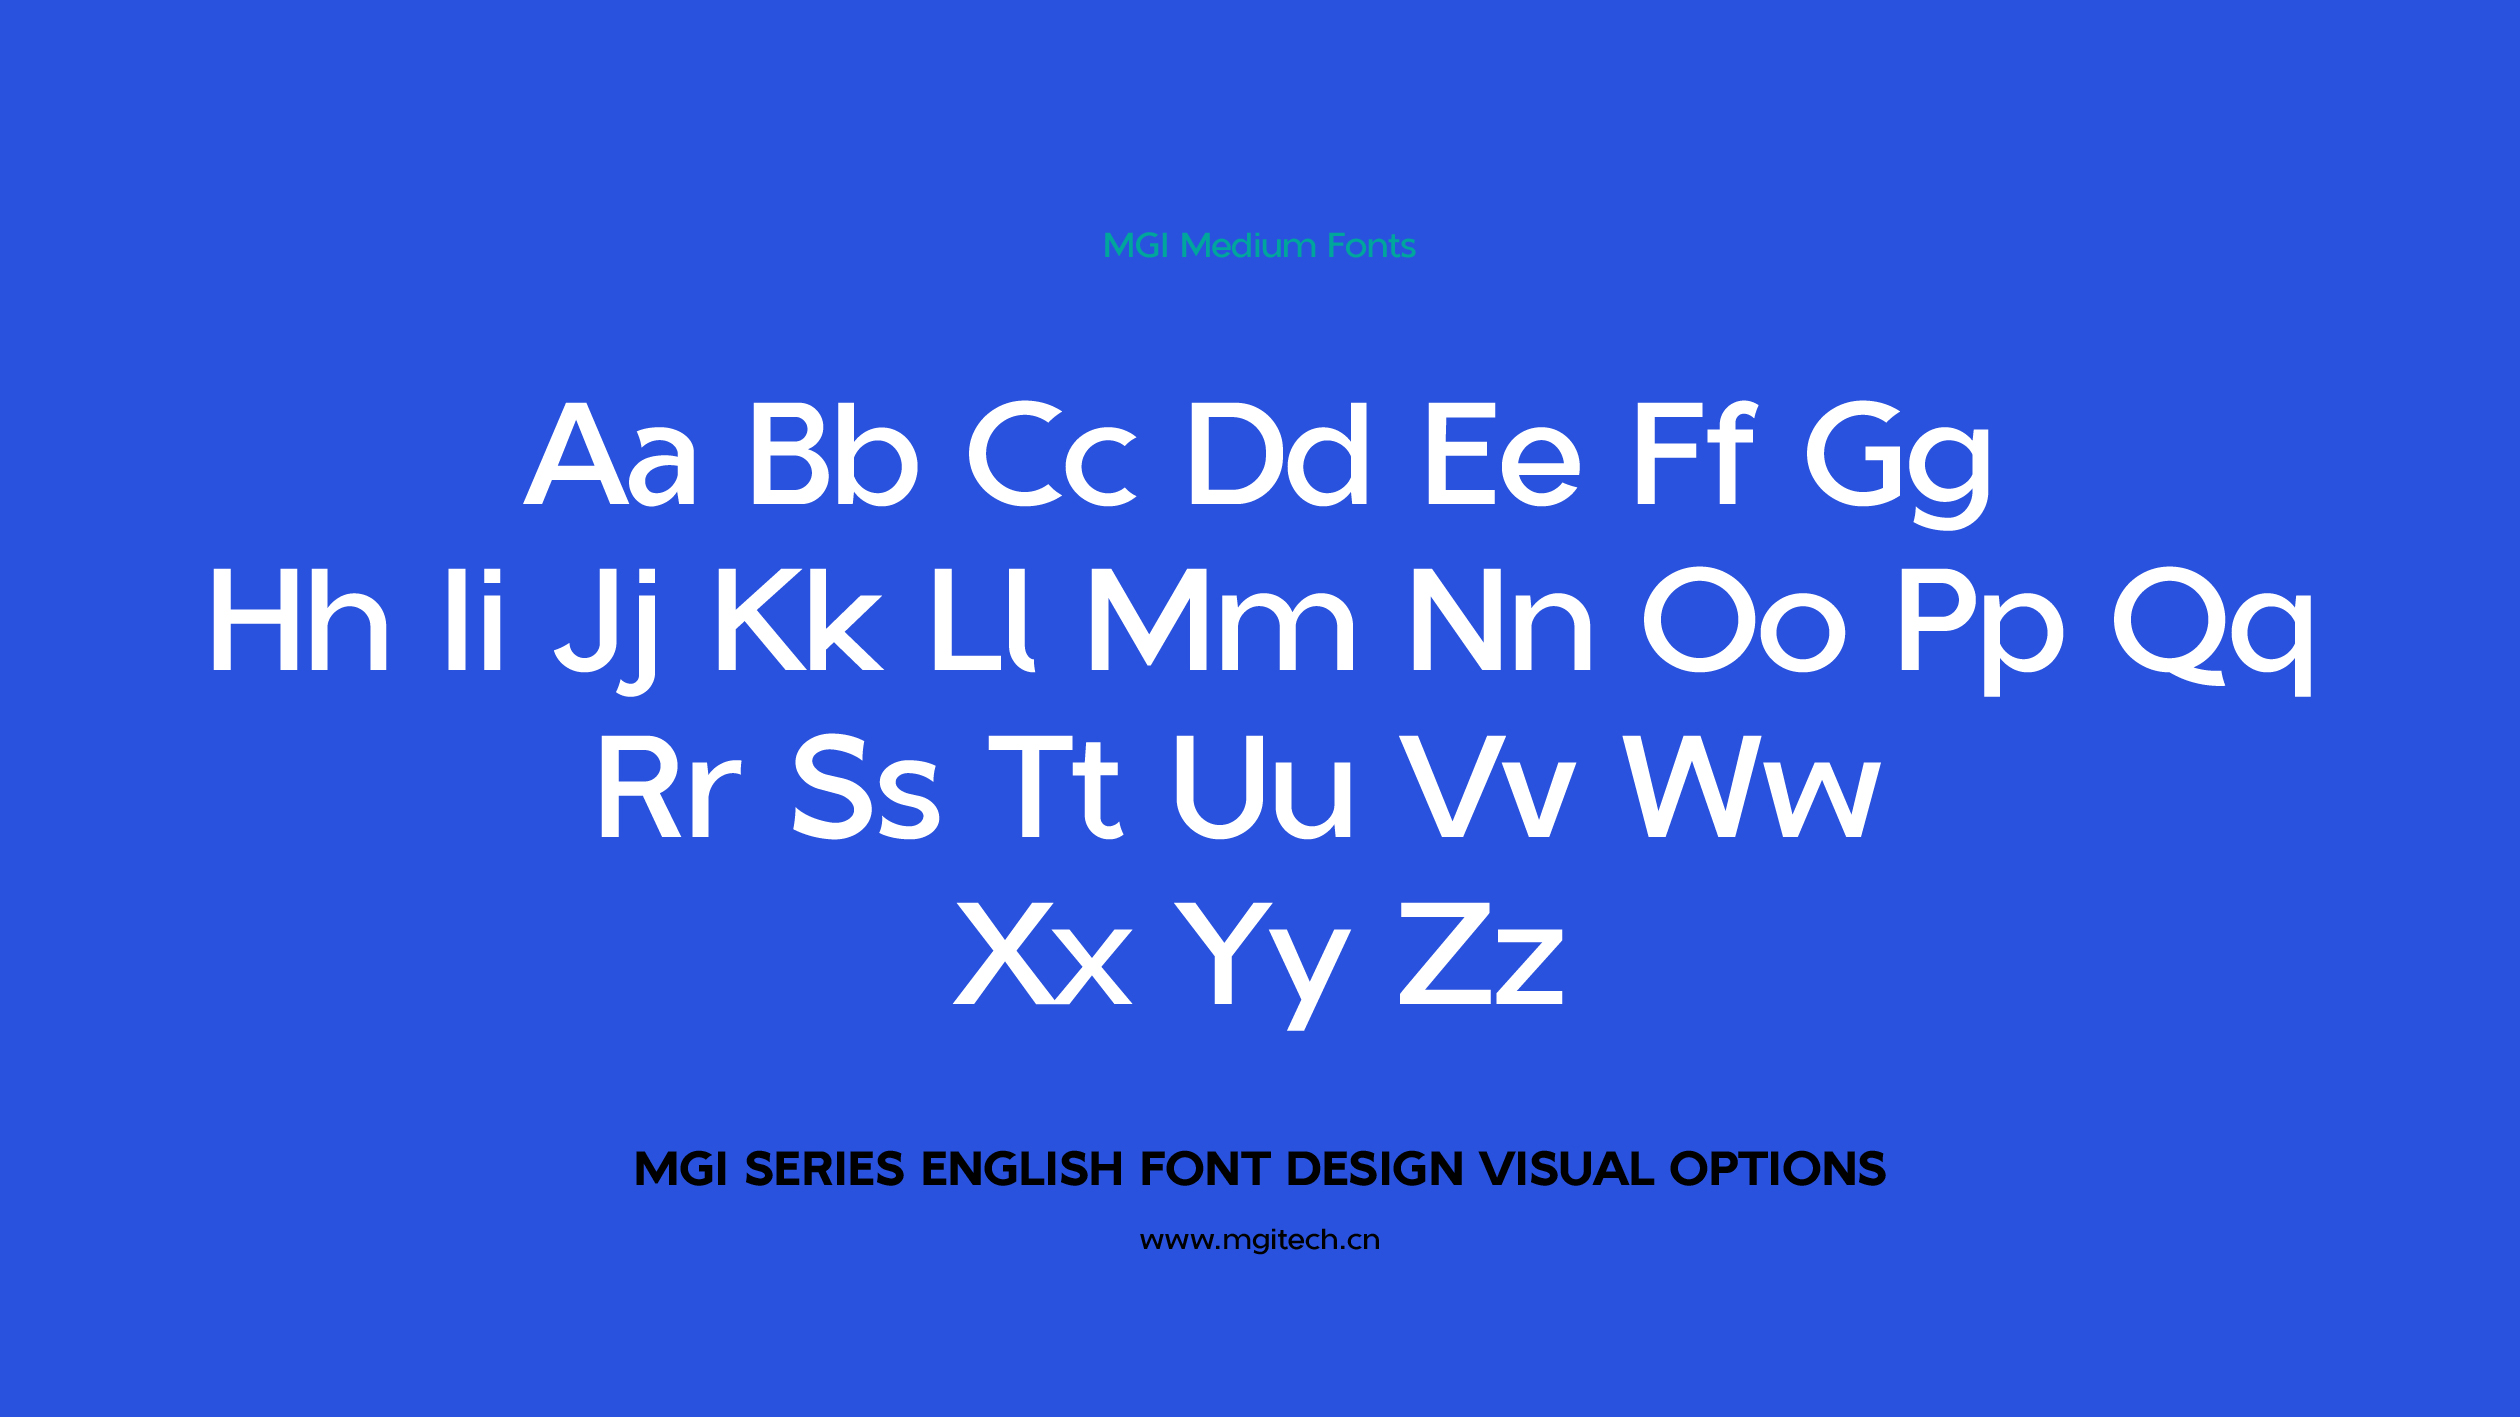 MGI English Series Font Customization-Crazy Pencil Tip